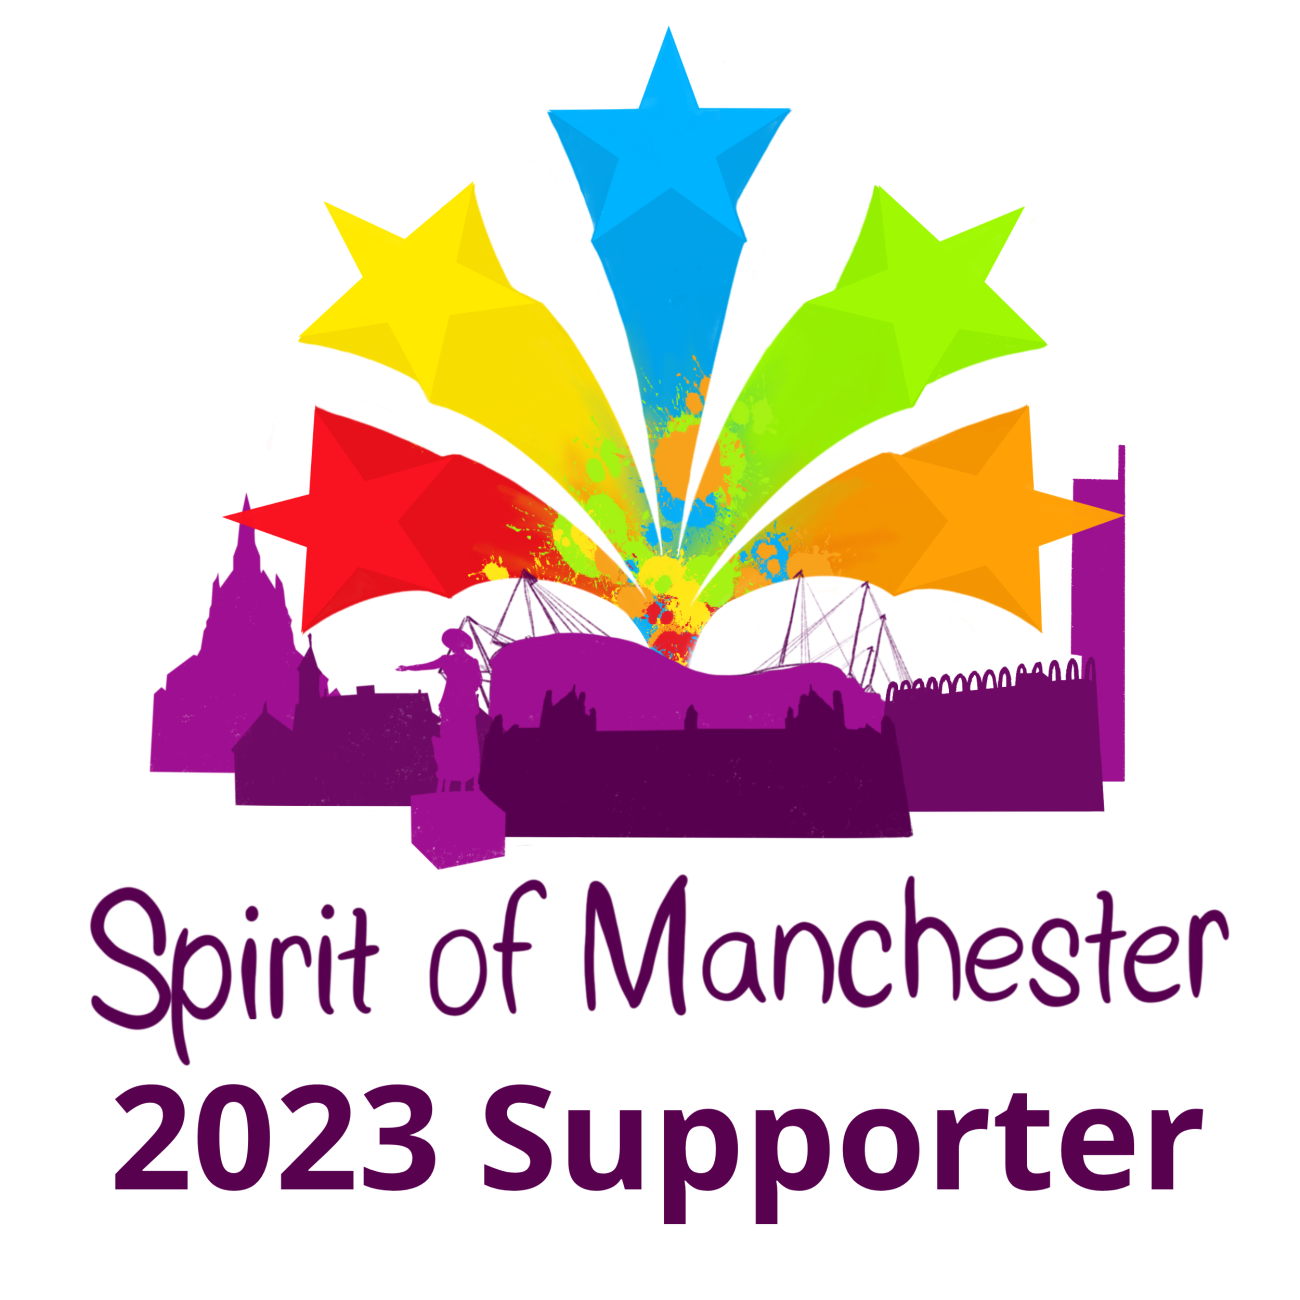 spirit of manchester 2023 supporter logo